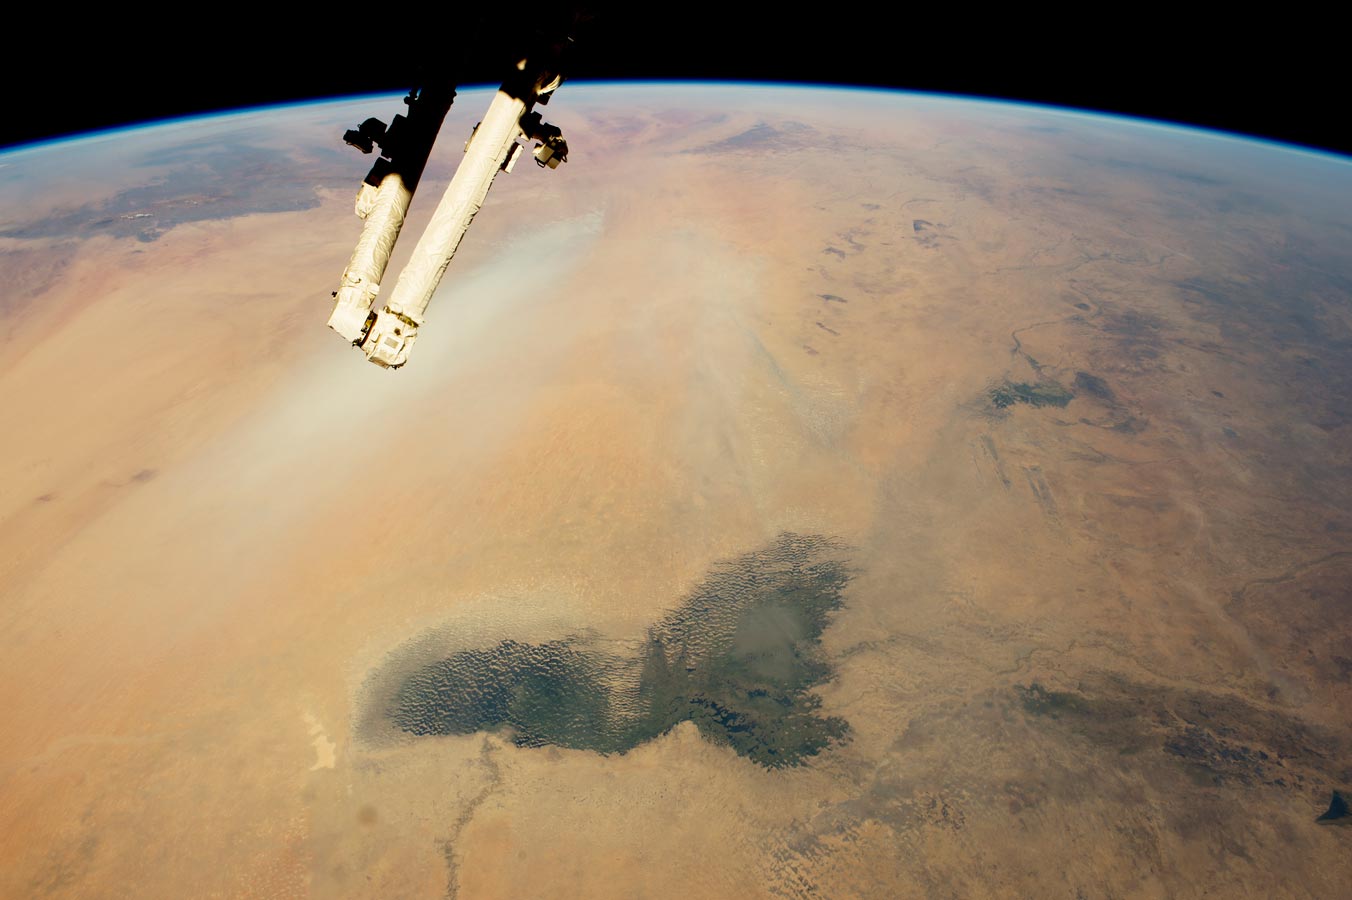 Озеро Чад и шлейфы пыли в пустыне Сахара в Африке. Темно-зеленые болота озера Чад выделяются на переднем плане. Даже если это более 200 километров в длину, современное озера Чад является лишь небольшим остатком огромного озера, которое занимало большую часть этого пейзажа в недавнем геологическом прошлом.